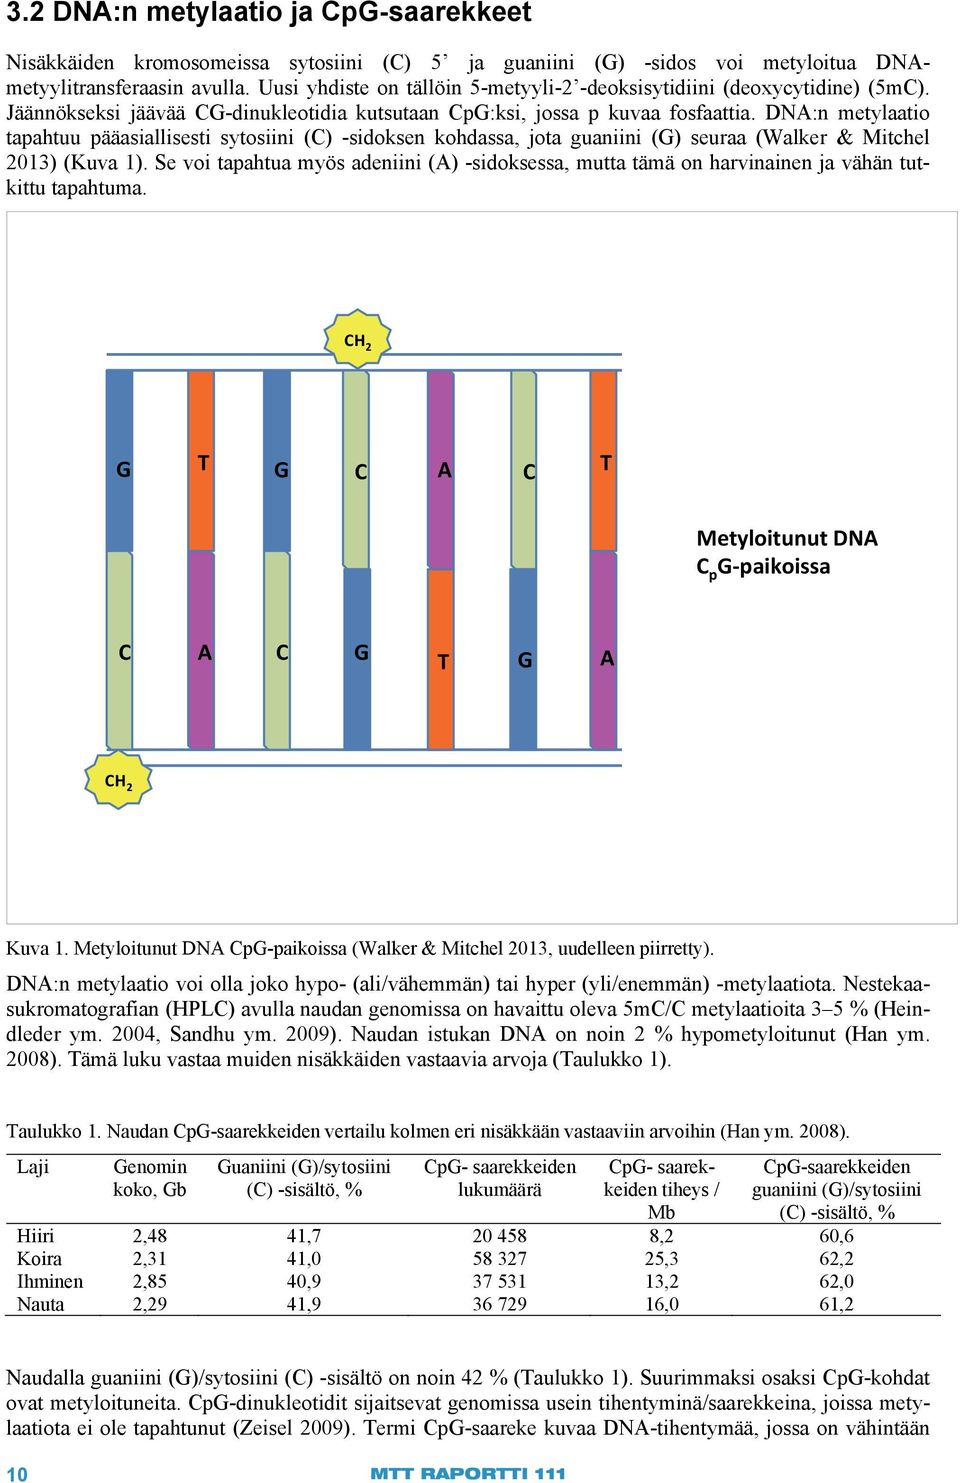 DNA:n metylaatio tapahtuu pääasiallisesti sytosiini (C) -sidoksen kohdassa, jota guaniini (G) seuraa (Walker & Mitchel 2013) (Kuva 1).